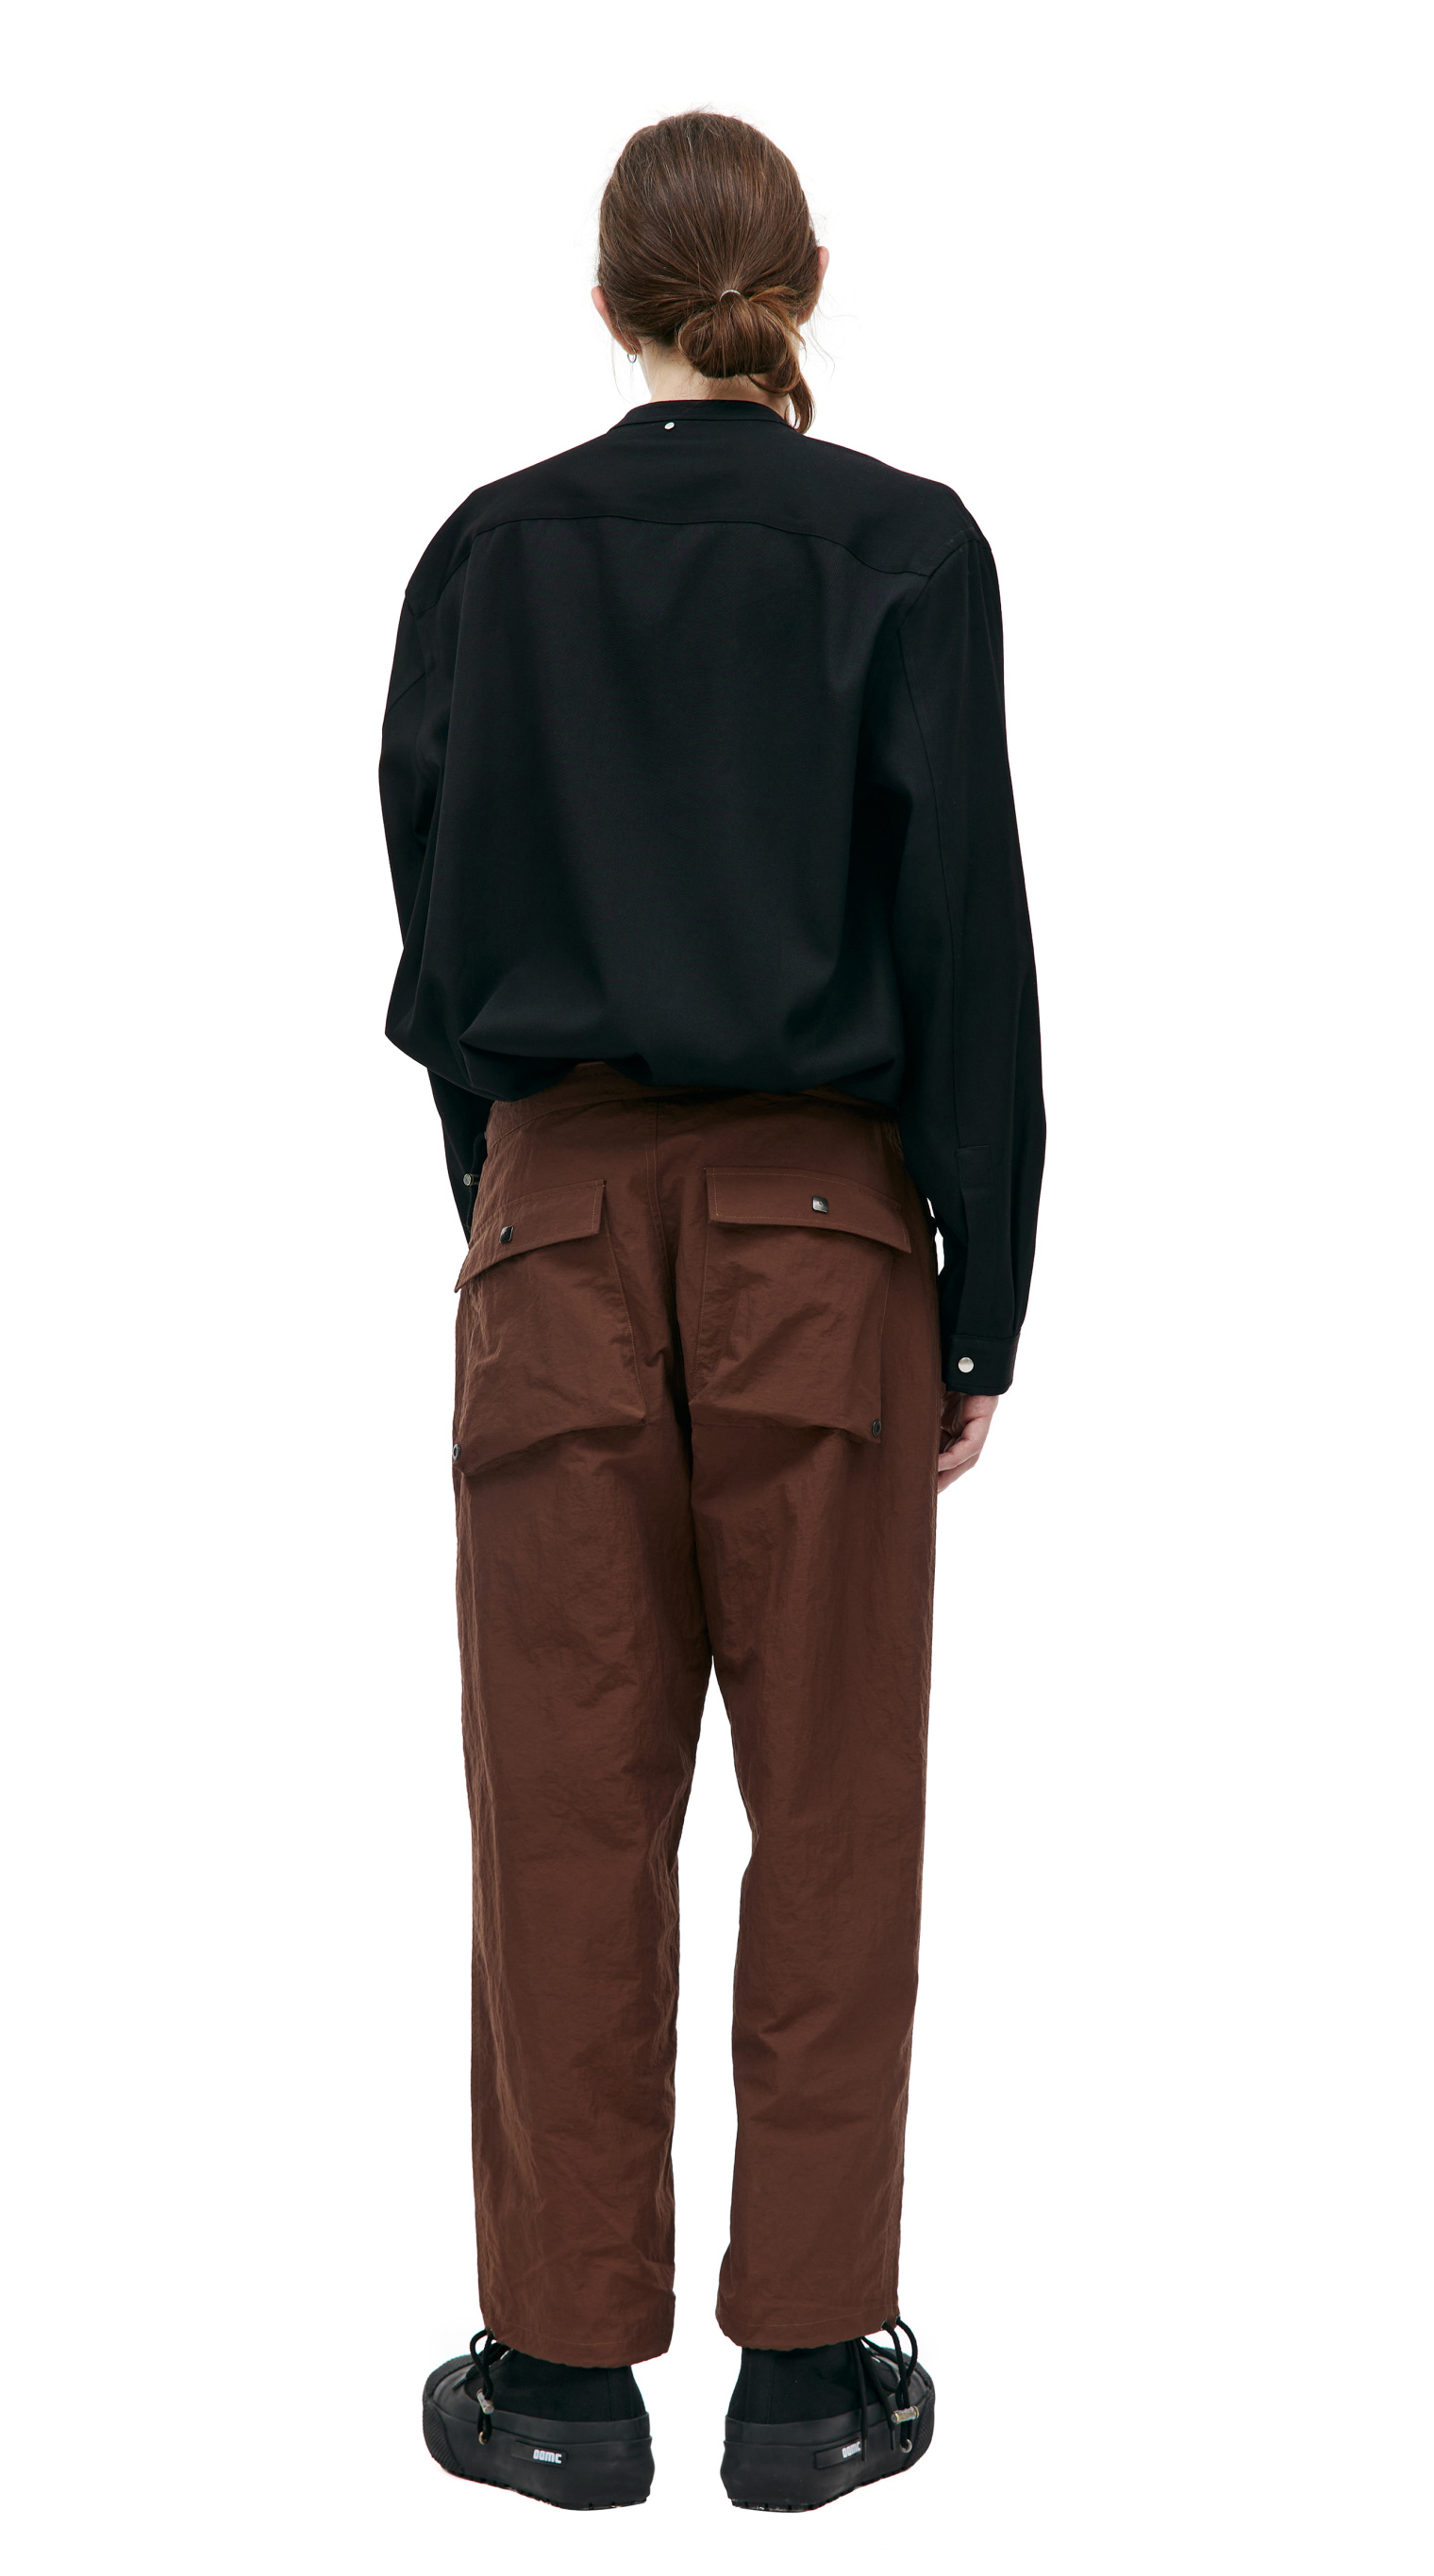 CAERUS Brown nylon trousers